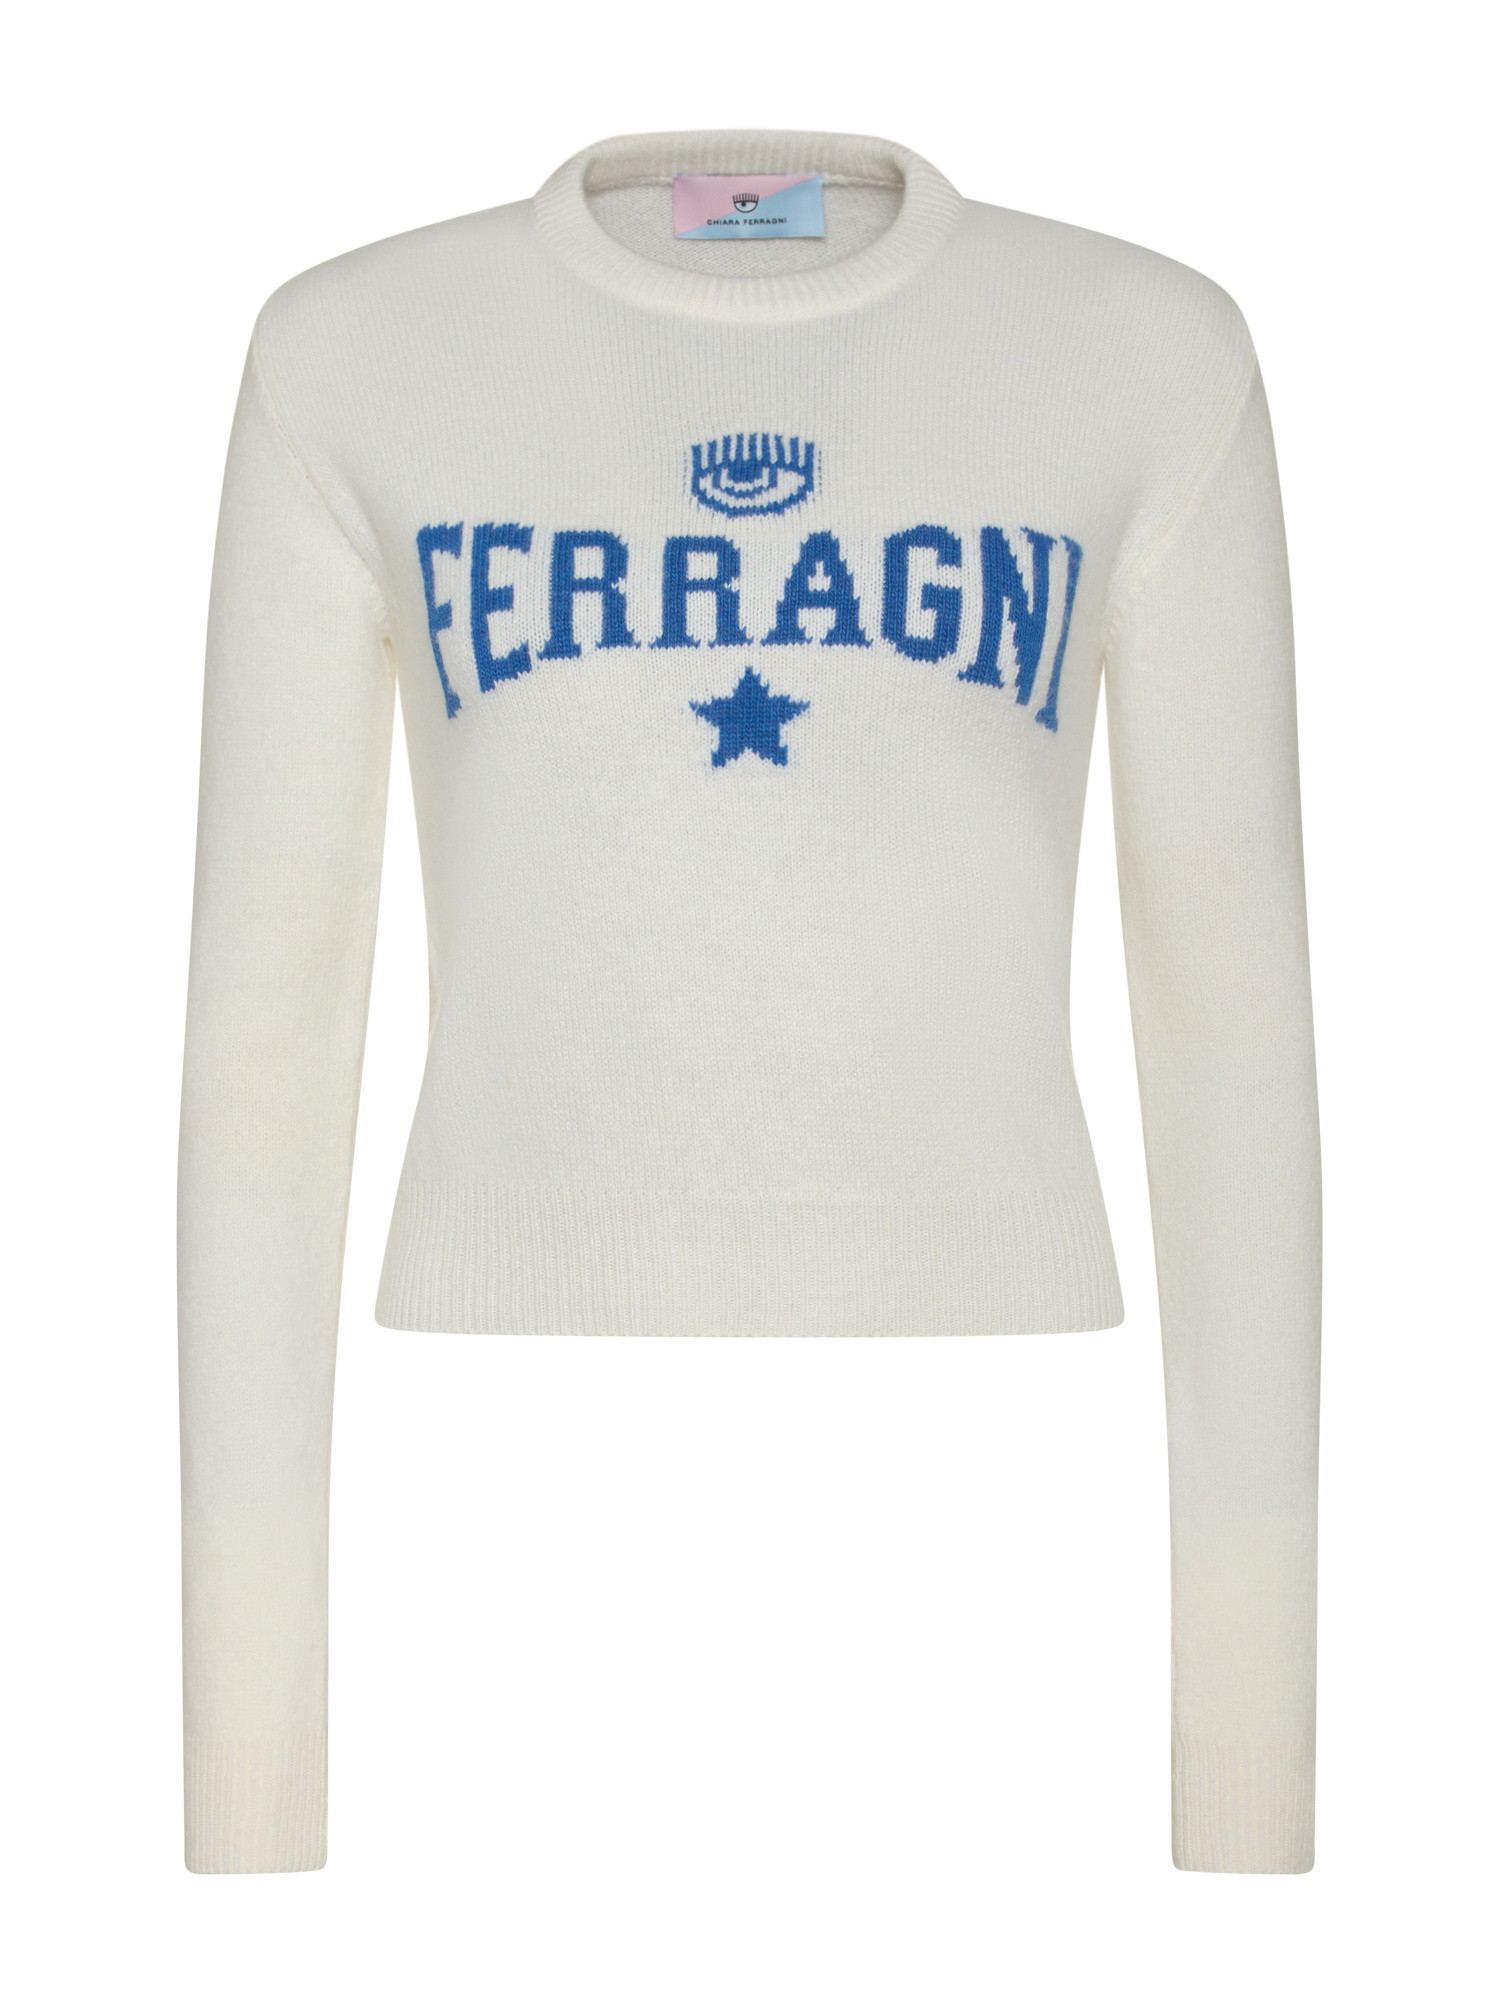 Chiara Ferragni - Ferragni stretch sweater, White, large image number 0